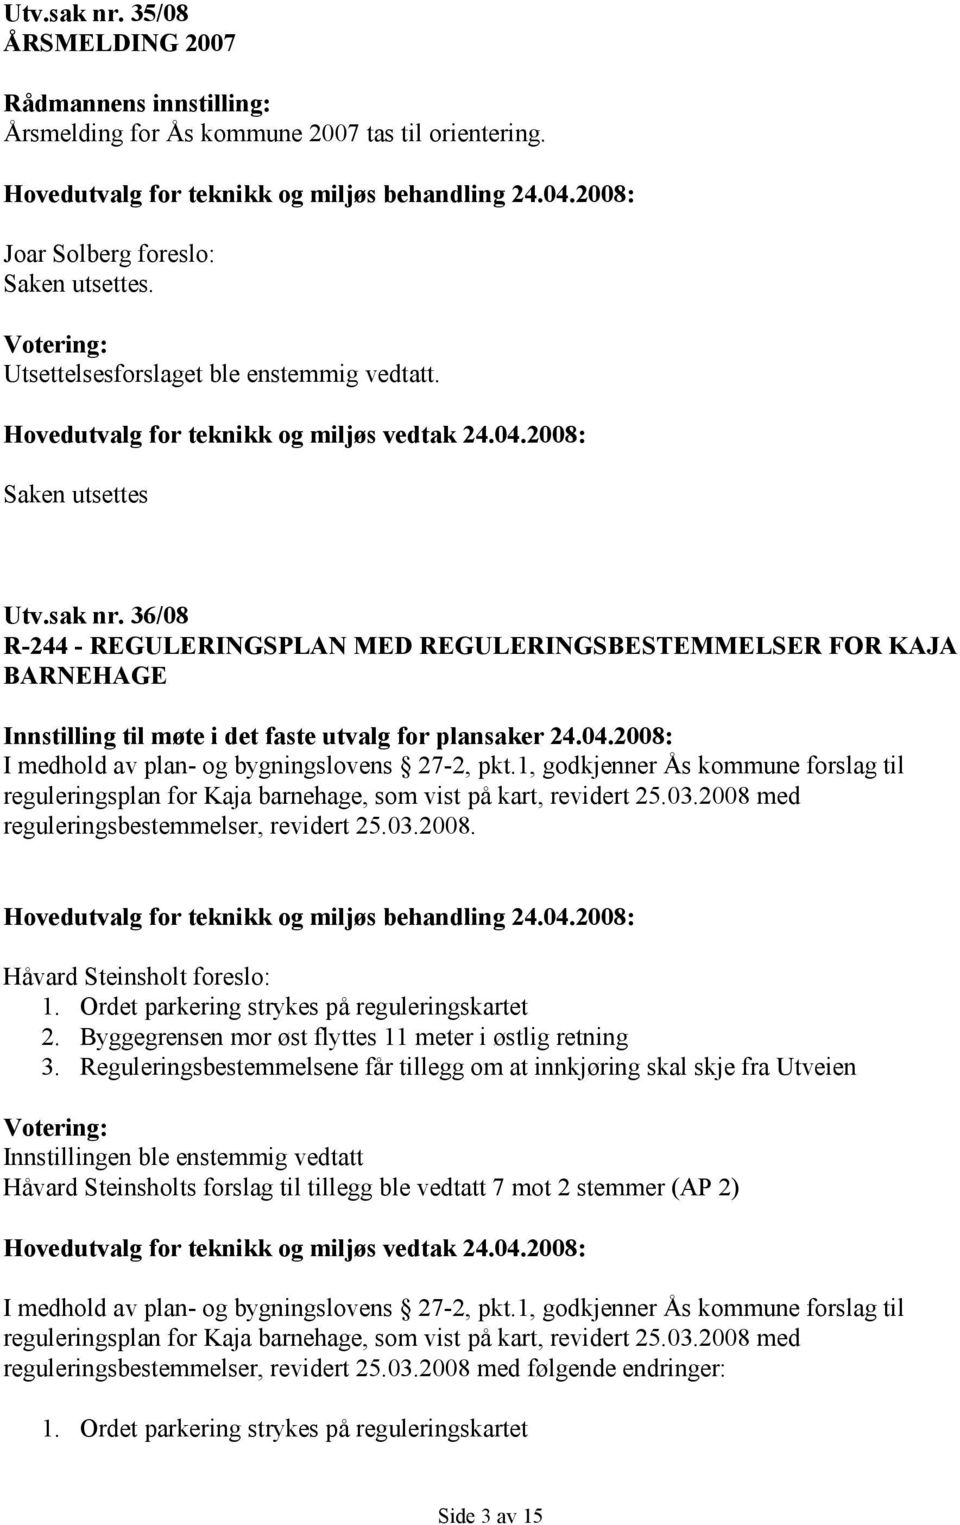 2008: I medhold av plan- og bygningslovens 27-2, pkt.1, godkjenner Ås kommune forslag til reguleringsplan for Kaja barnehage, som vist på kart, revidert 25.03.